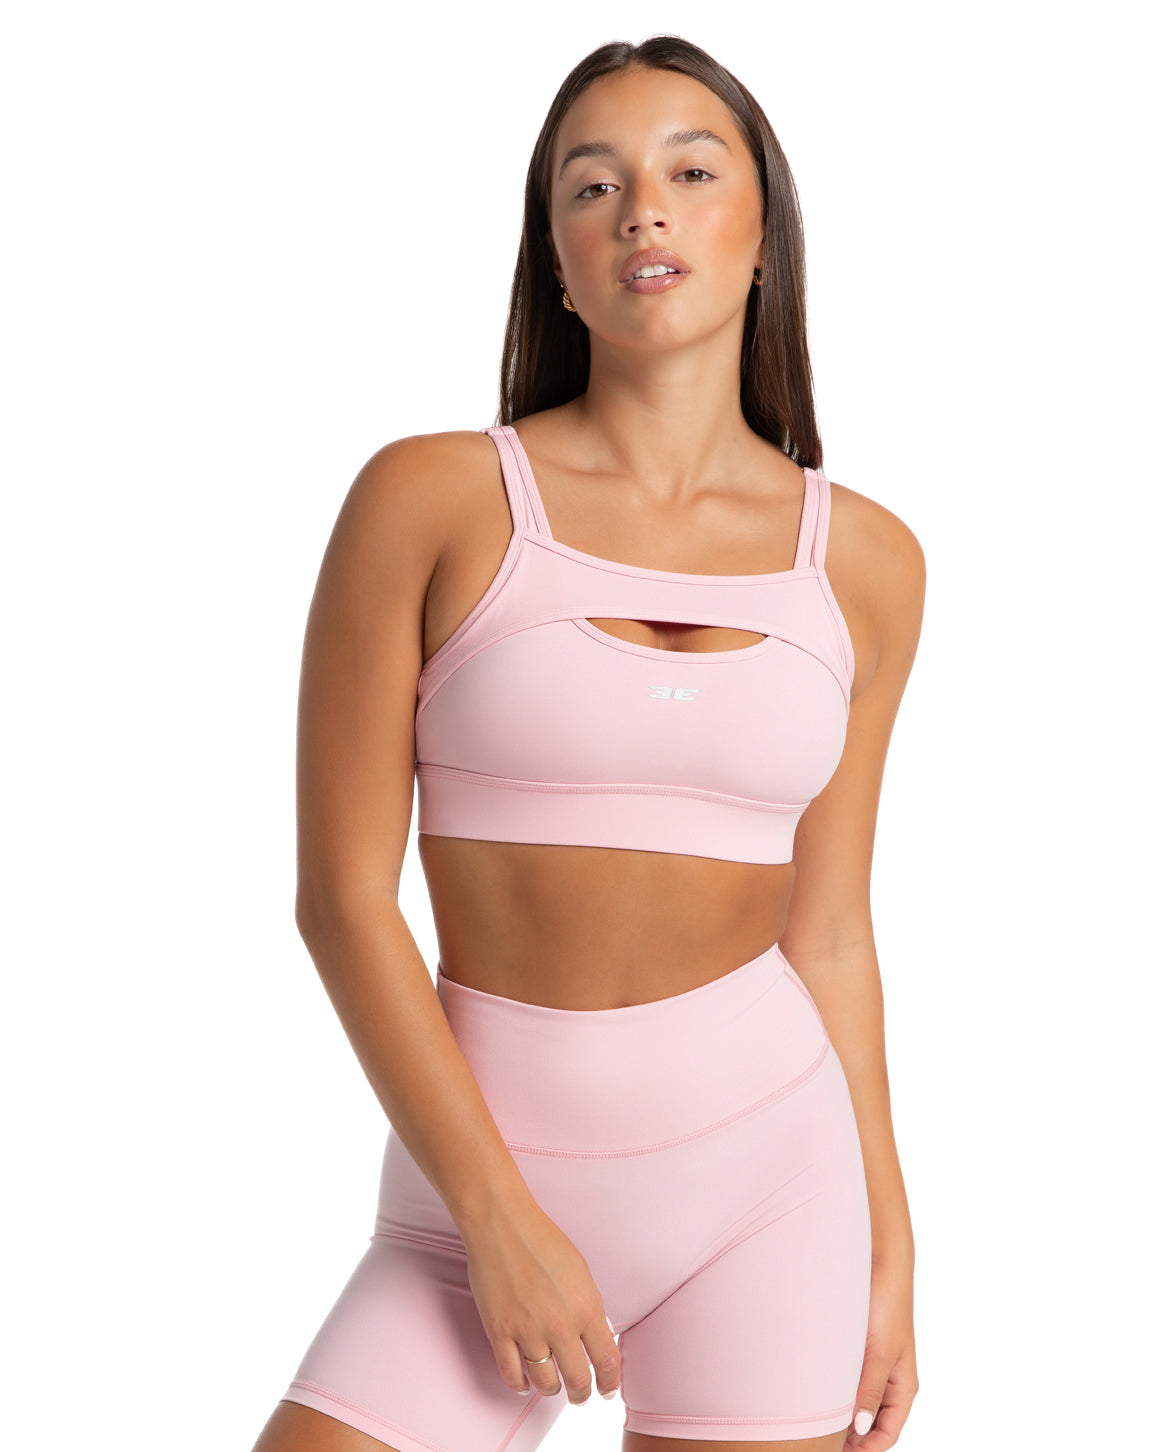 Aura Support Bra - Pastel Pink – Elite Eleven